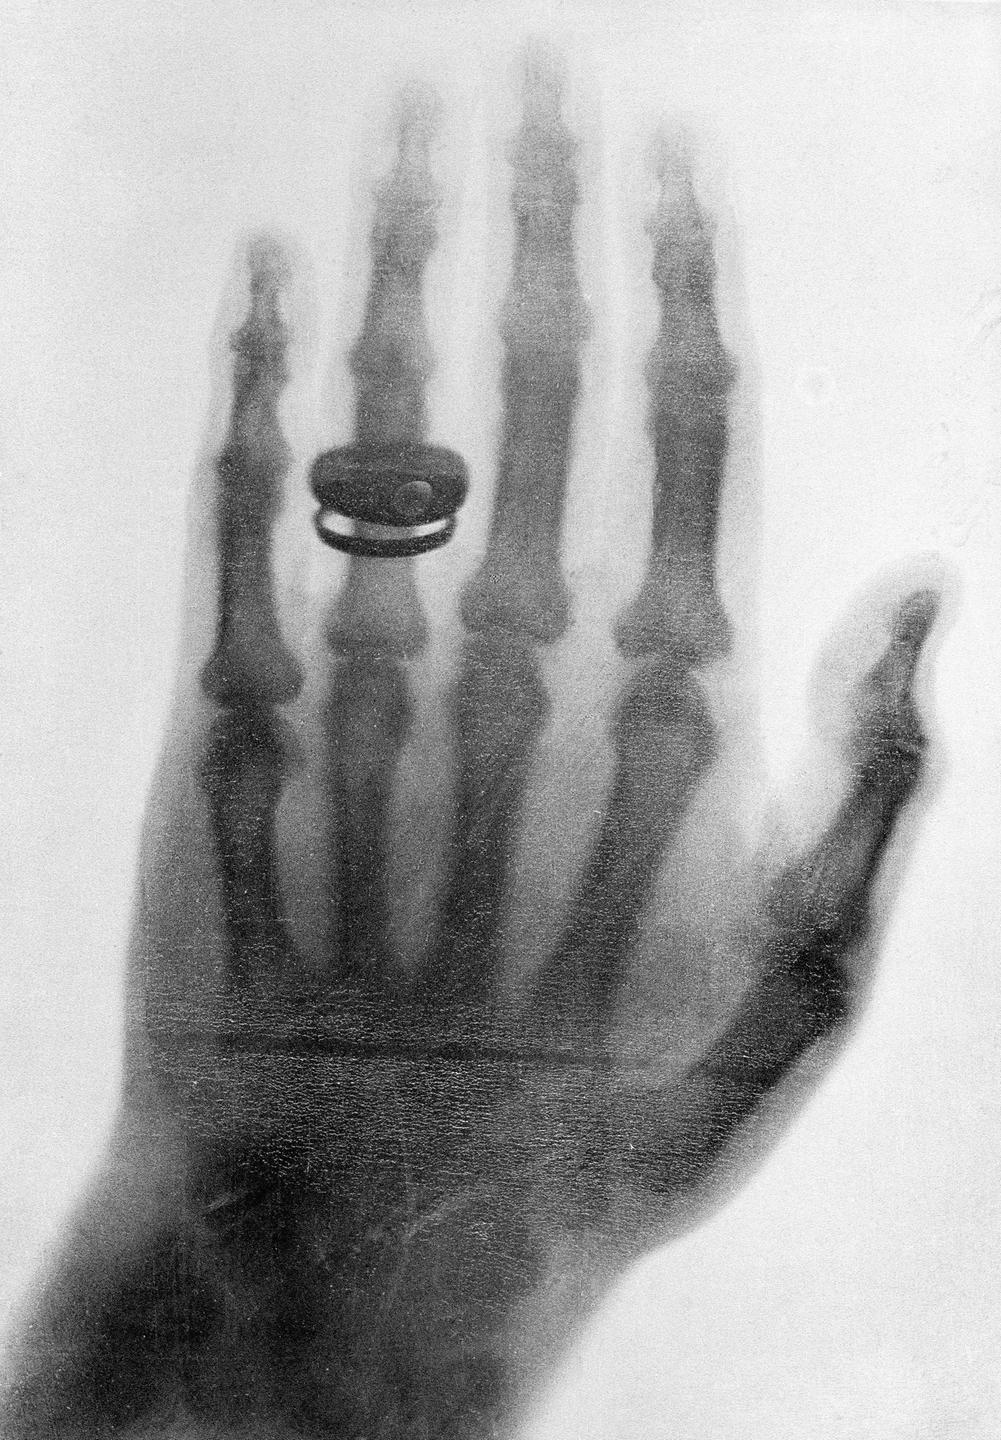 Röntgenbild: Eine der ersten Röntgenaufnahmen, die 1898 von Wilhelm Conrad Röntgen gemacht wurde. Zu sehen ist eine Hand mit einem Ring am Finger.